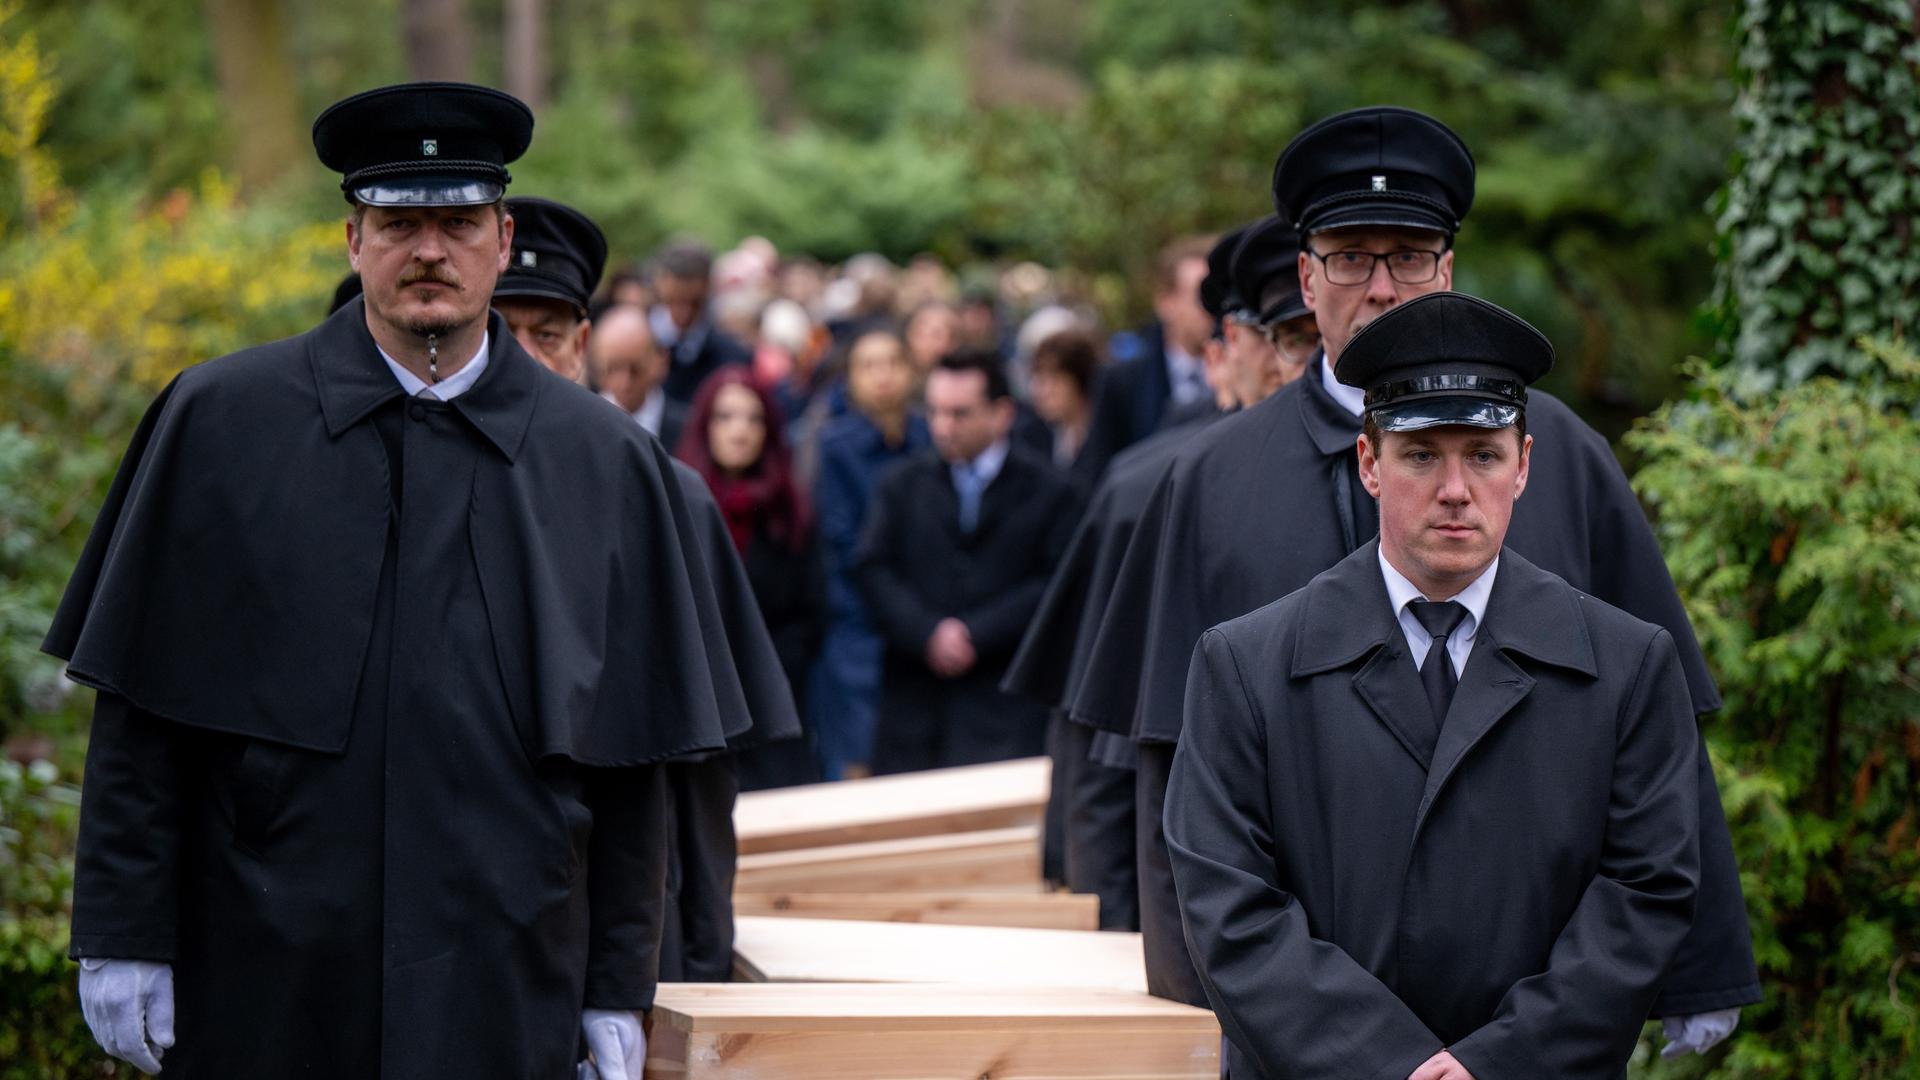 Gebeinekisten mit menschlichen Knochen werden nach der Trauerfeier zur Grabstätte auf dem Waldfriedhof Dahlem getragen.